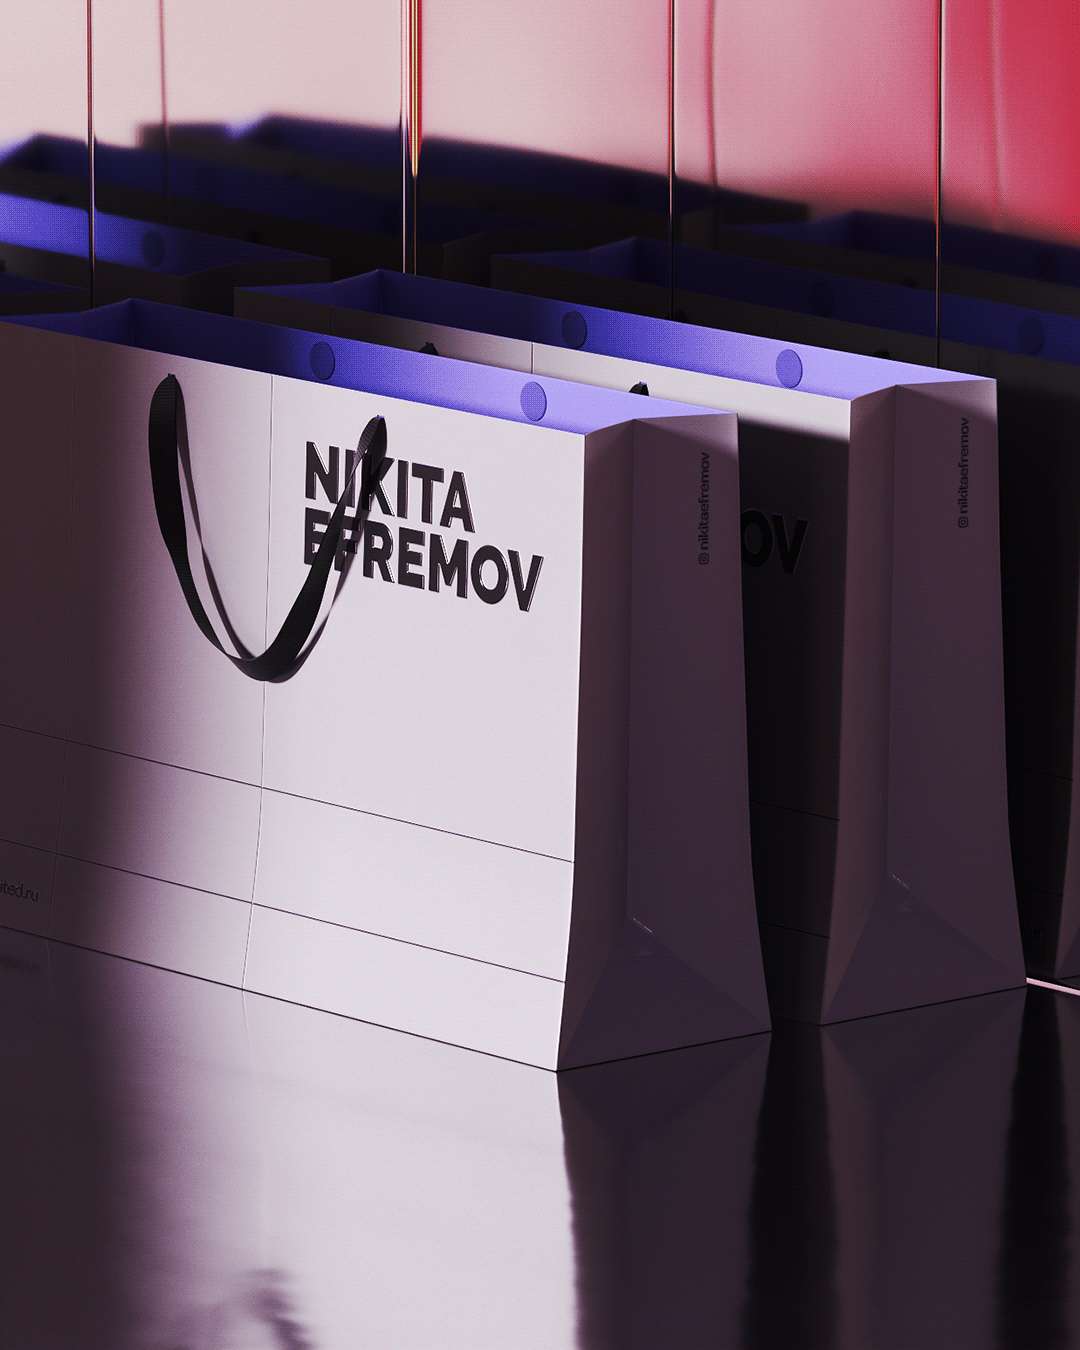 Nikita Efremov运动鞋店品牌视觉设计